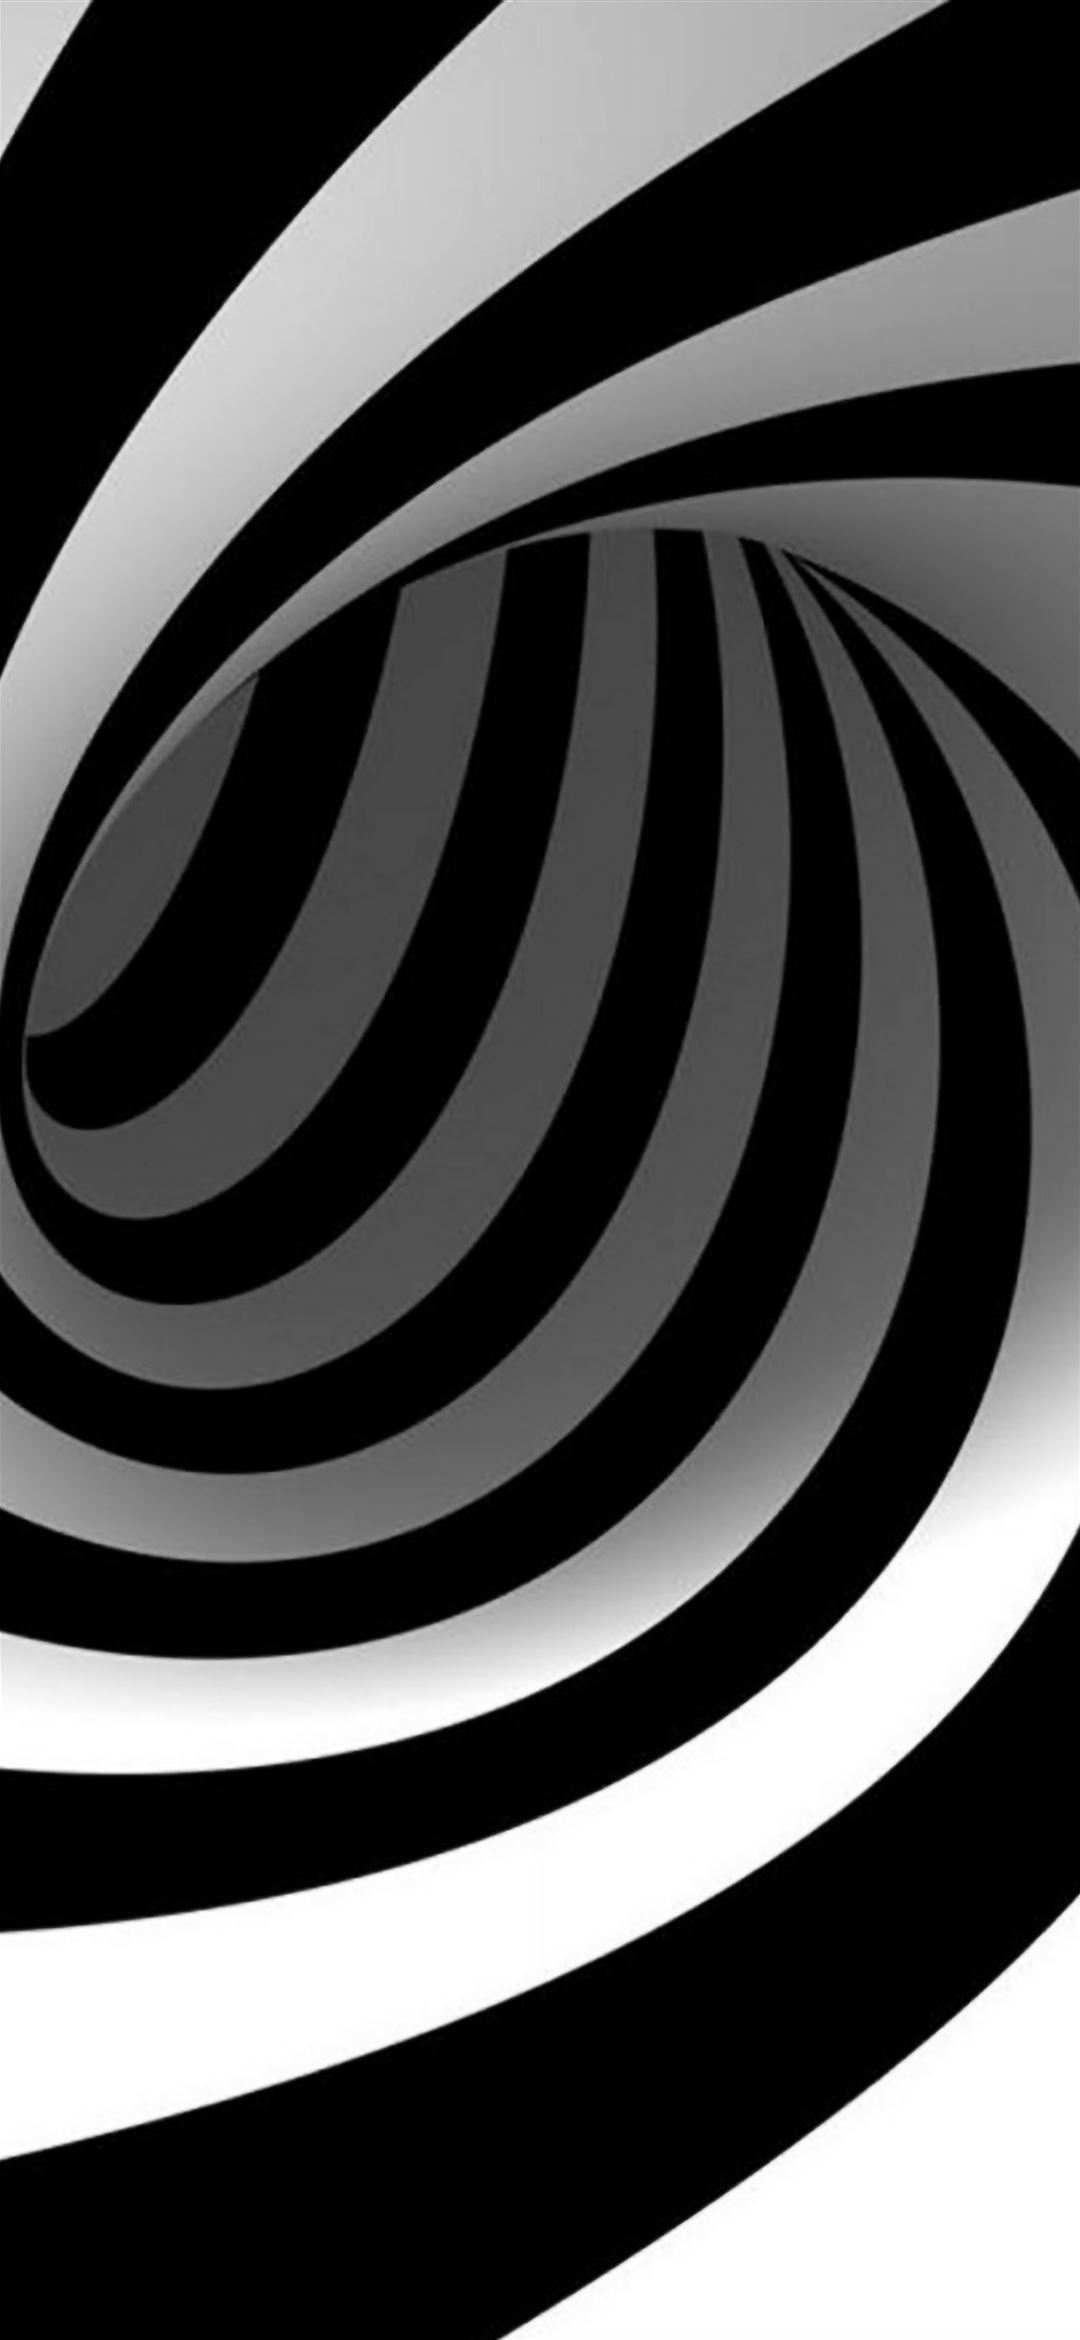 Nếu bạn đang tìm kiếm hình nền độc đáo và nghệ thuật, 3D Abstract Swirl là một sự lựa chọn tuyệt vời. Mẫu hình này kết hợp giữa vòng xoáy phức tạp và sự đan xen của các màu sắc nổi bật, tạo ra một màn hình điện thoại tinh tế và vô cùng ấn tượng.